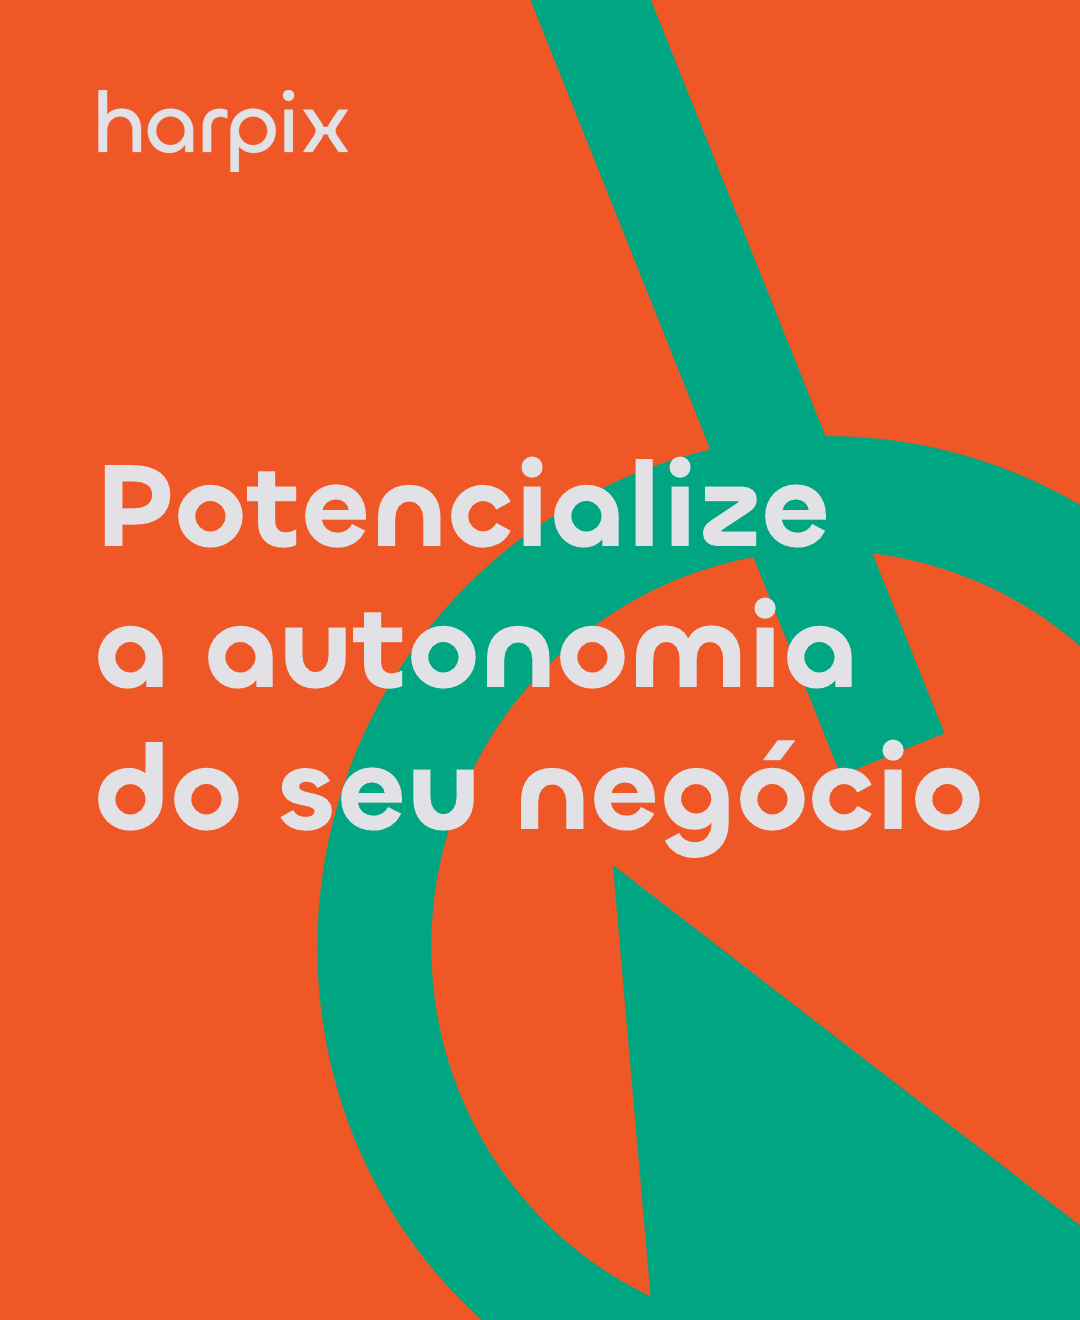 Harpix potencializa a autonomia do seu negócio